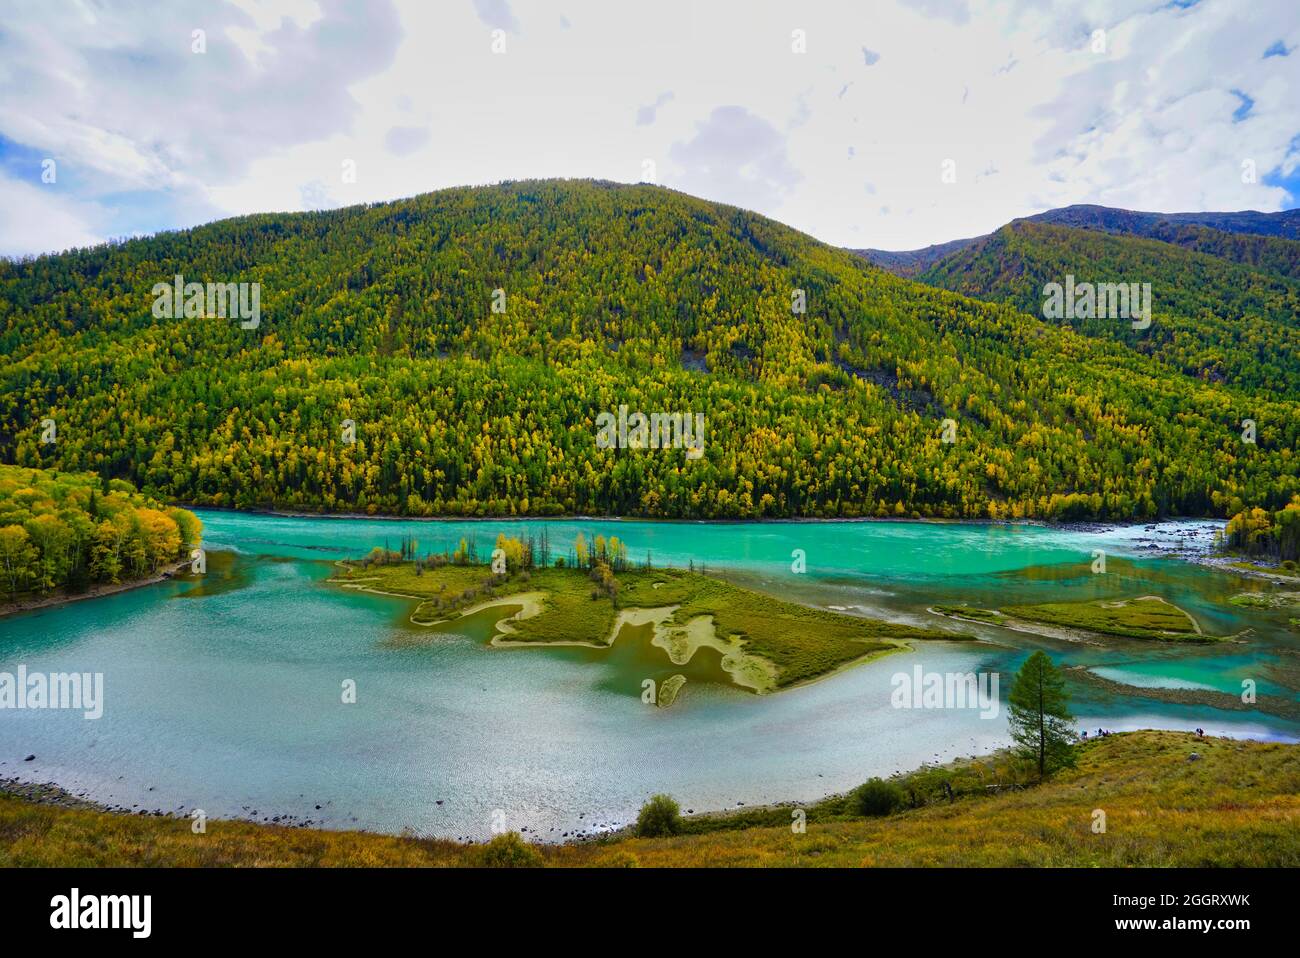 Wolong Bay of Kanas Lake. Kristallblauer Fluss, kleine Sandbank.Grüne Baumhügel. Die natürliche Schönheit des Paradieses. Kanas Nature Reserve. Xinjiang Provi Stockfoto